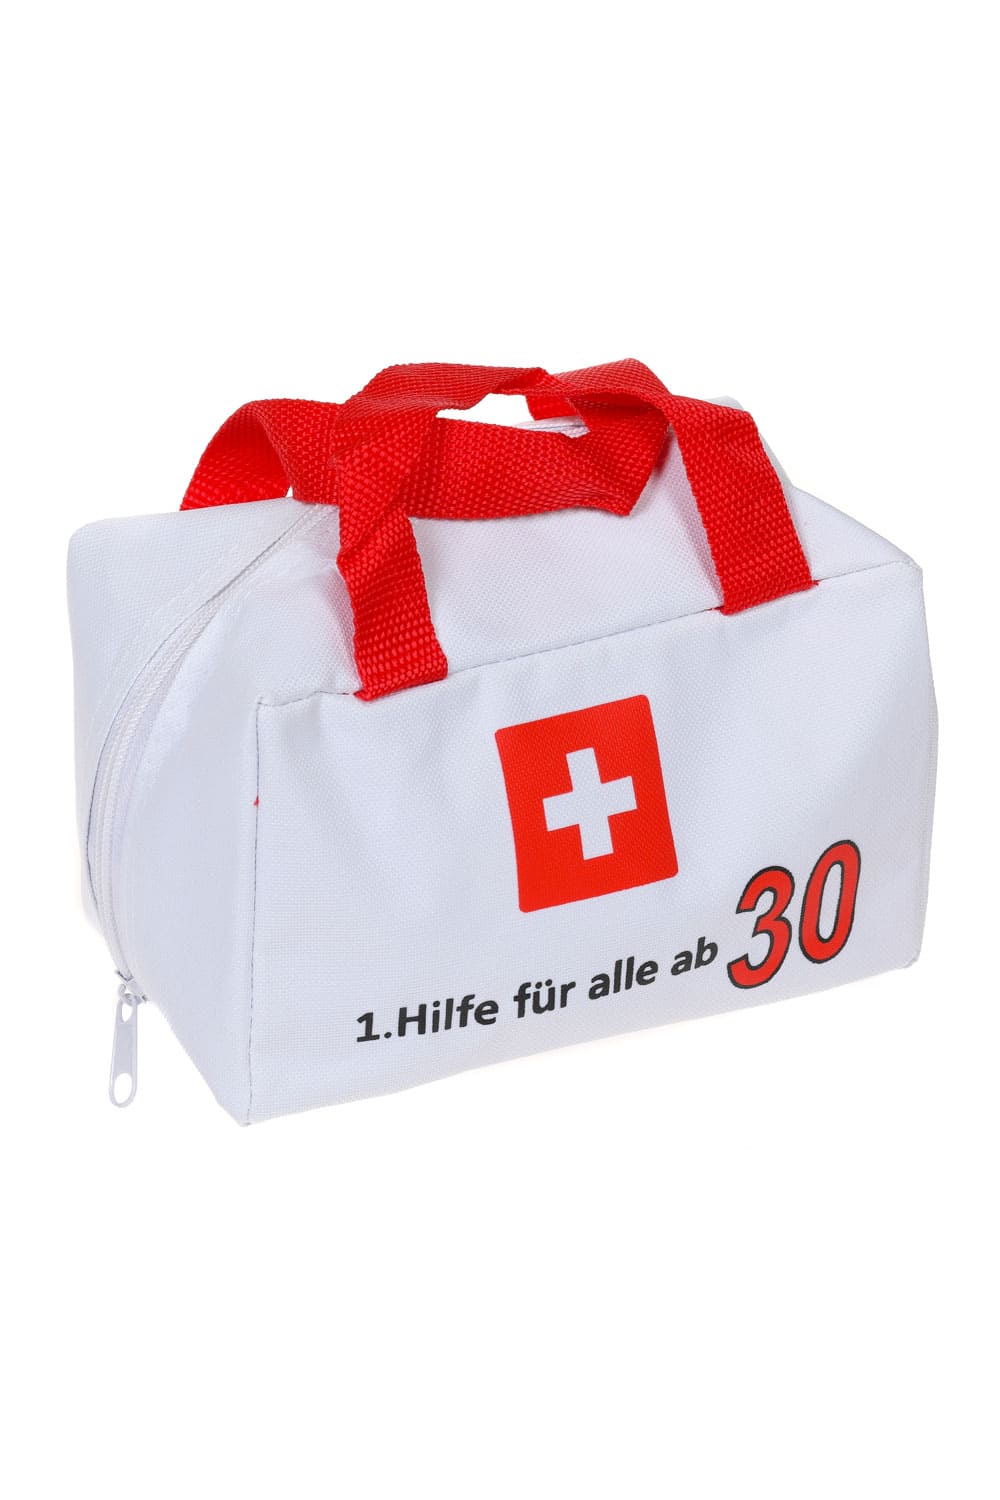 Eine witzige Geschenk Verpackung für den 30. Geburtstag. Die Notfall Tasche ist bedruckt mit der Geburtstagszahl und dem Spruch: 1. Hilfe für alle ab 30. Die Erste Hilfe Tasche kann beliebig gefuellt werden und laesst der Kreativitaet keine Grenzen. 